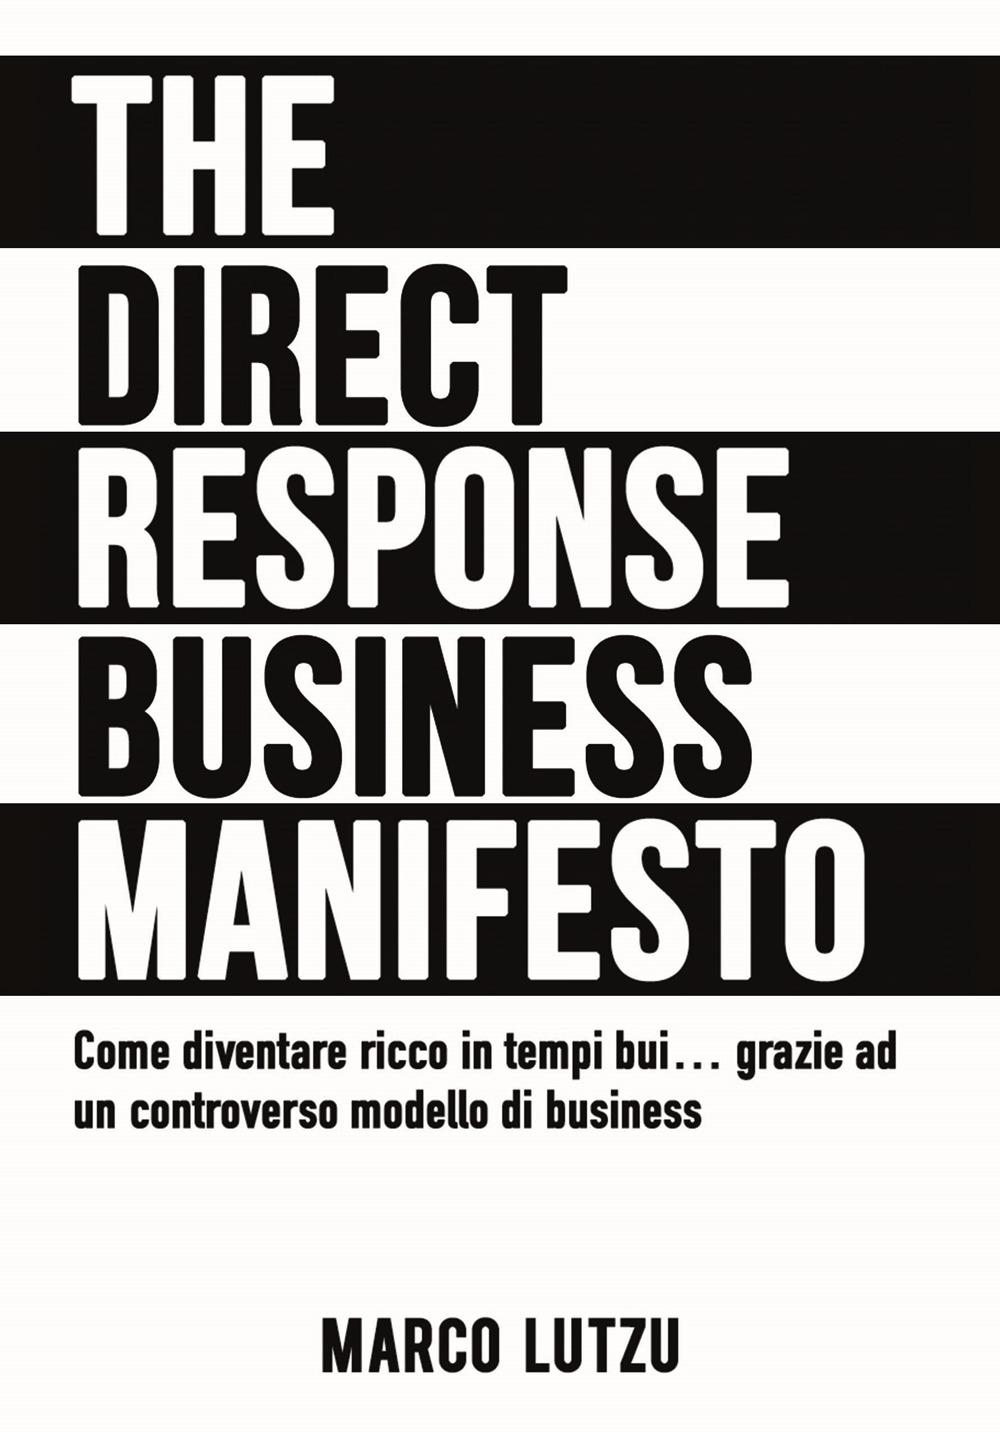 The direct response business manifesto. Come diventare ricco in tempi bui... grazie ad un controverso modello di business